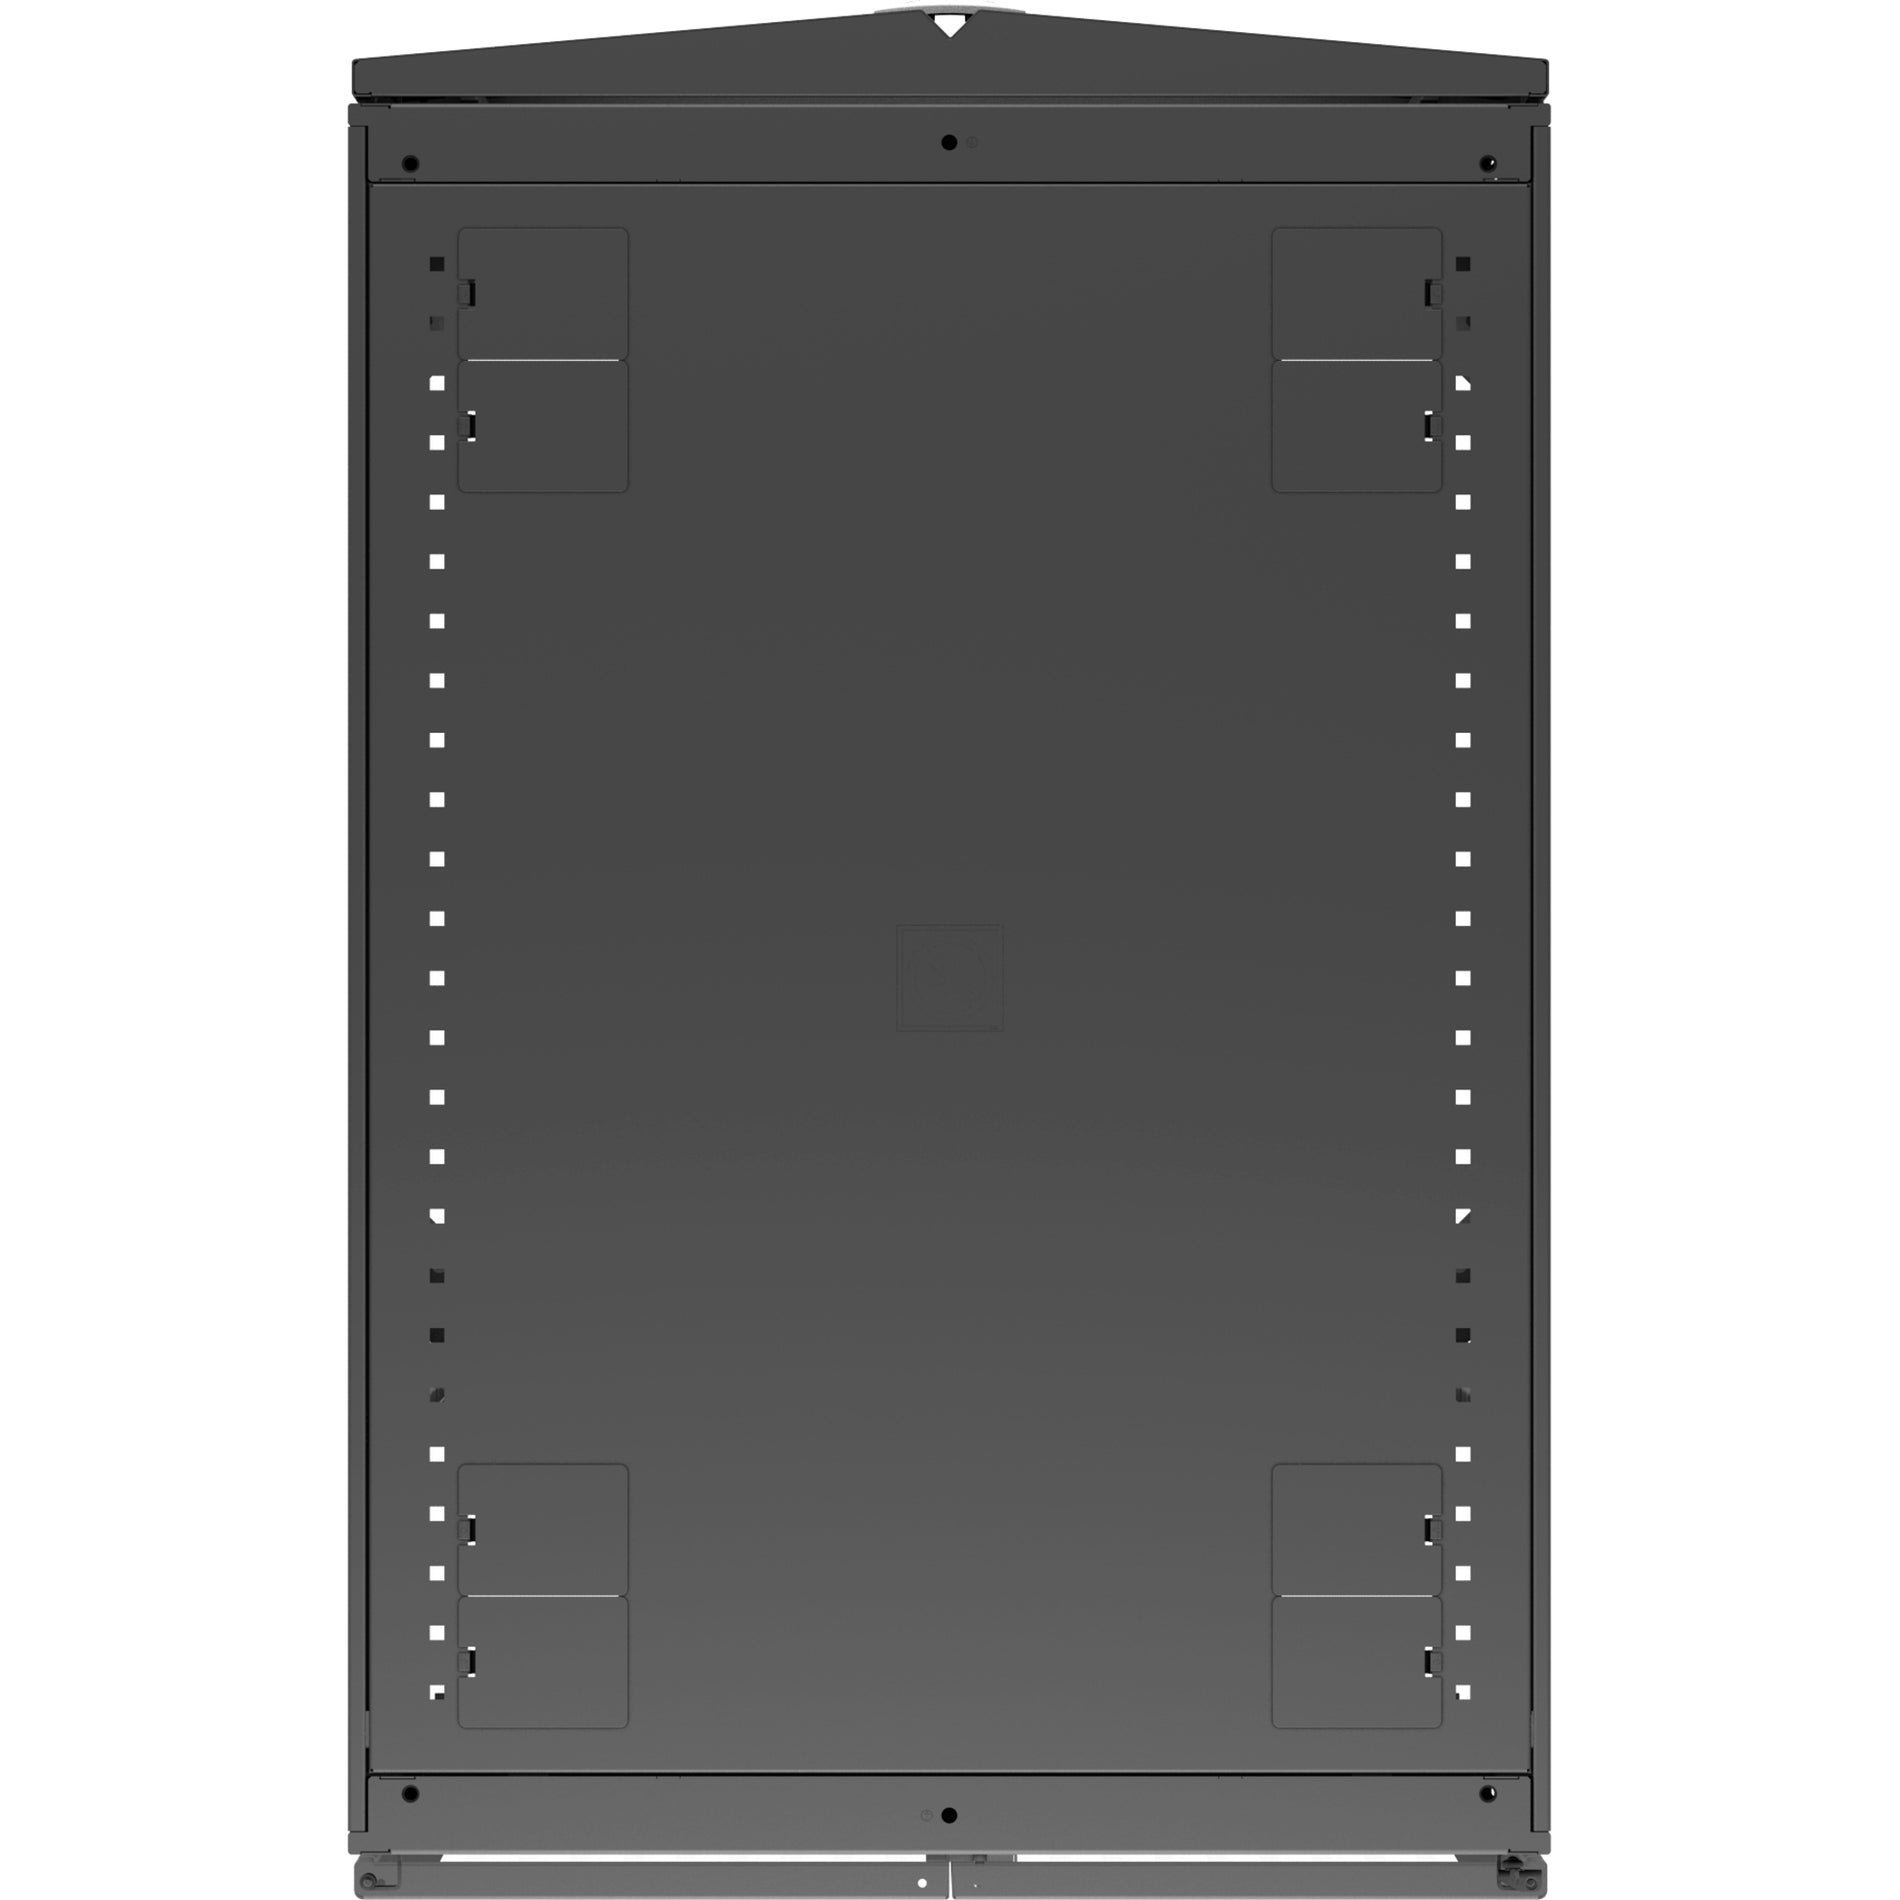 VERTIV VR3107 Vertiv VR Rack - 48U Server Rack Enclosure, 600x1100mm, 19-inch Cabinet